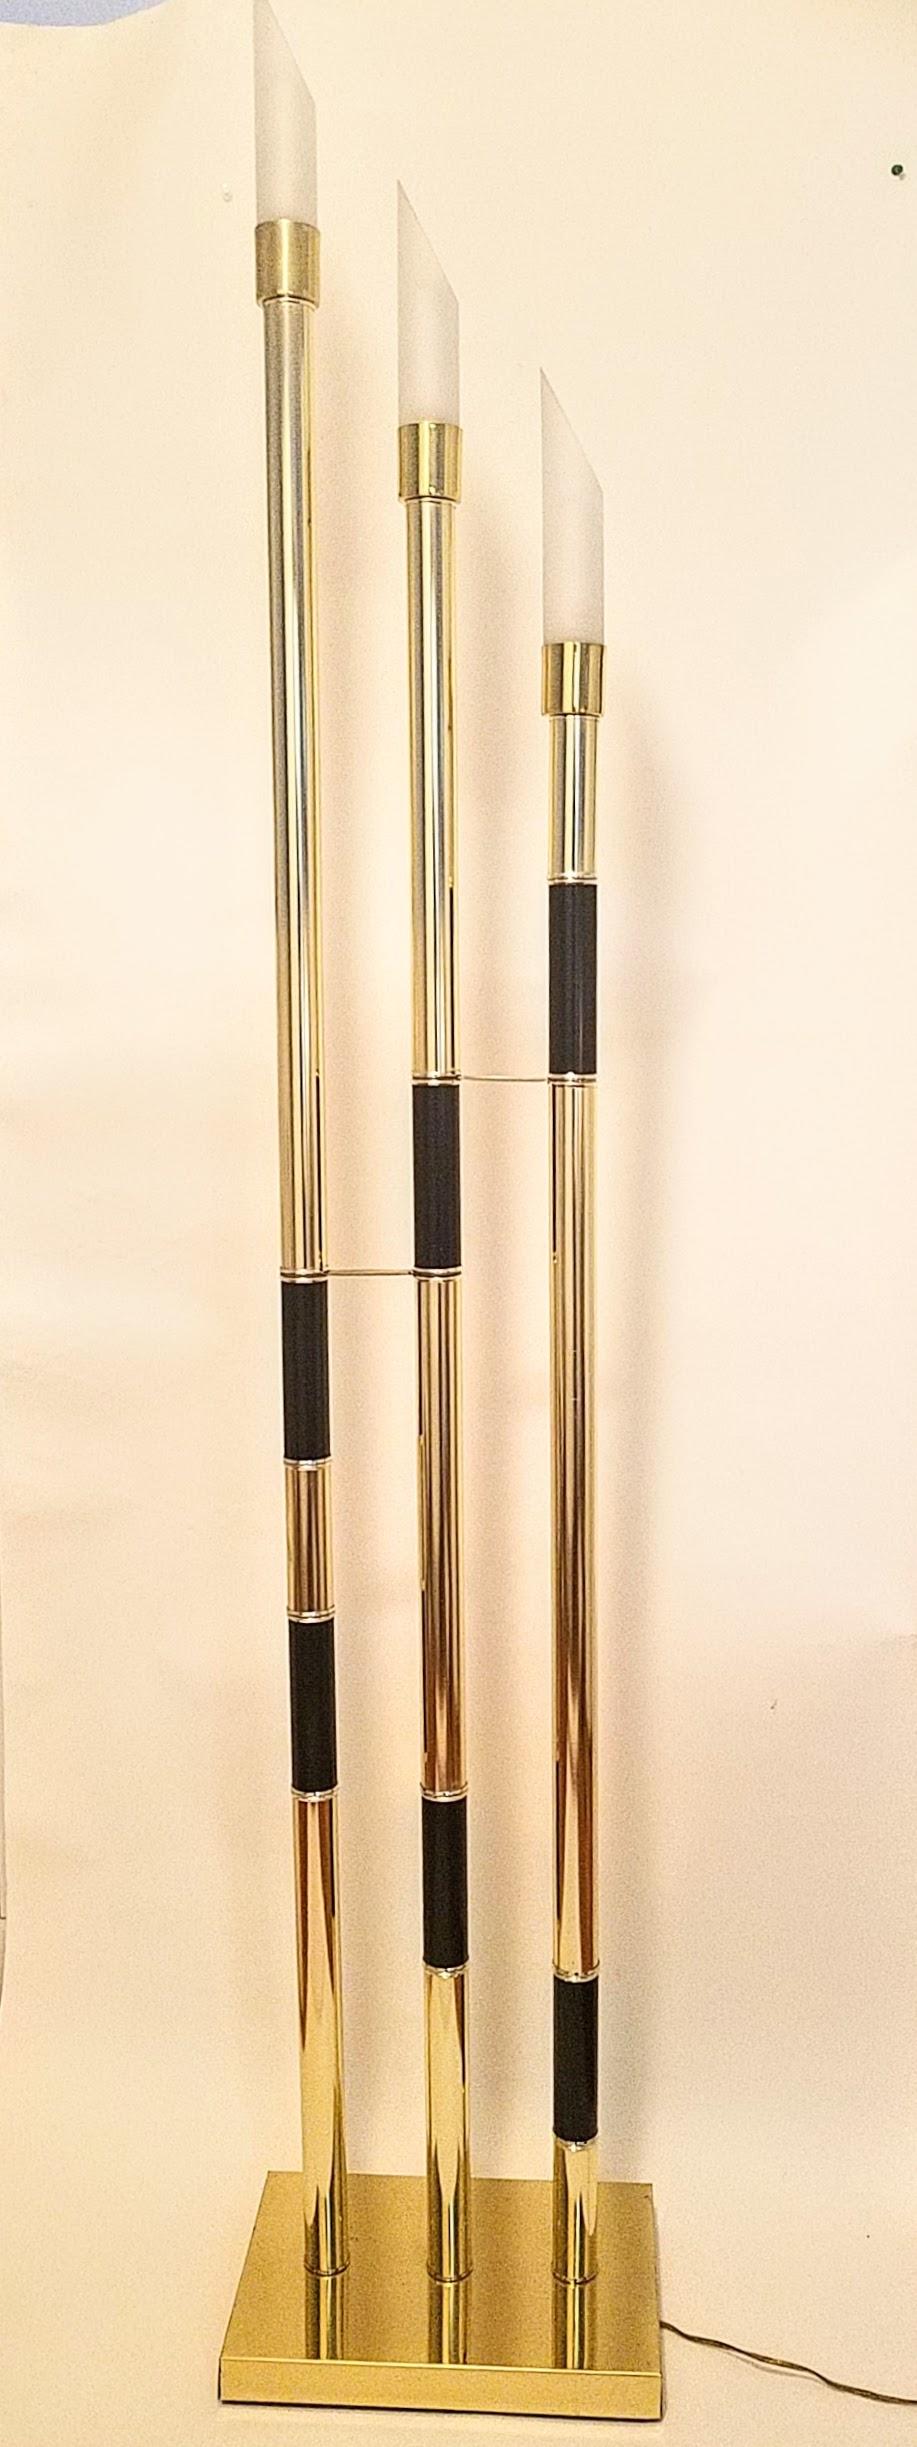 Le lampadaire italien Relco possède trois tubes en laiton poli qui sont décorés d'anneaux de laque noire. Le lampadaire est équipé d'un gradateur en ligne et de trois abat-jour en verre dépoli de 9 pouces. Fabriqué à Milan, en Italie, au milieu des